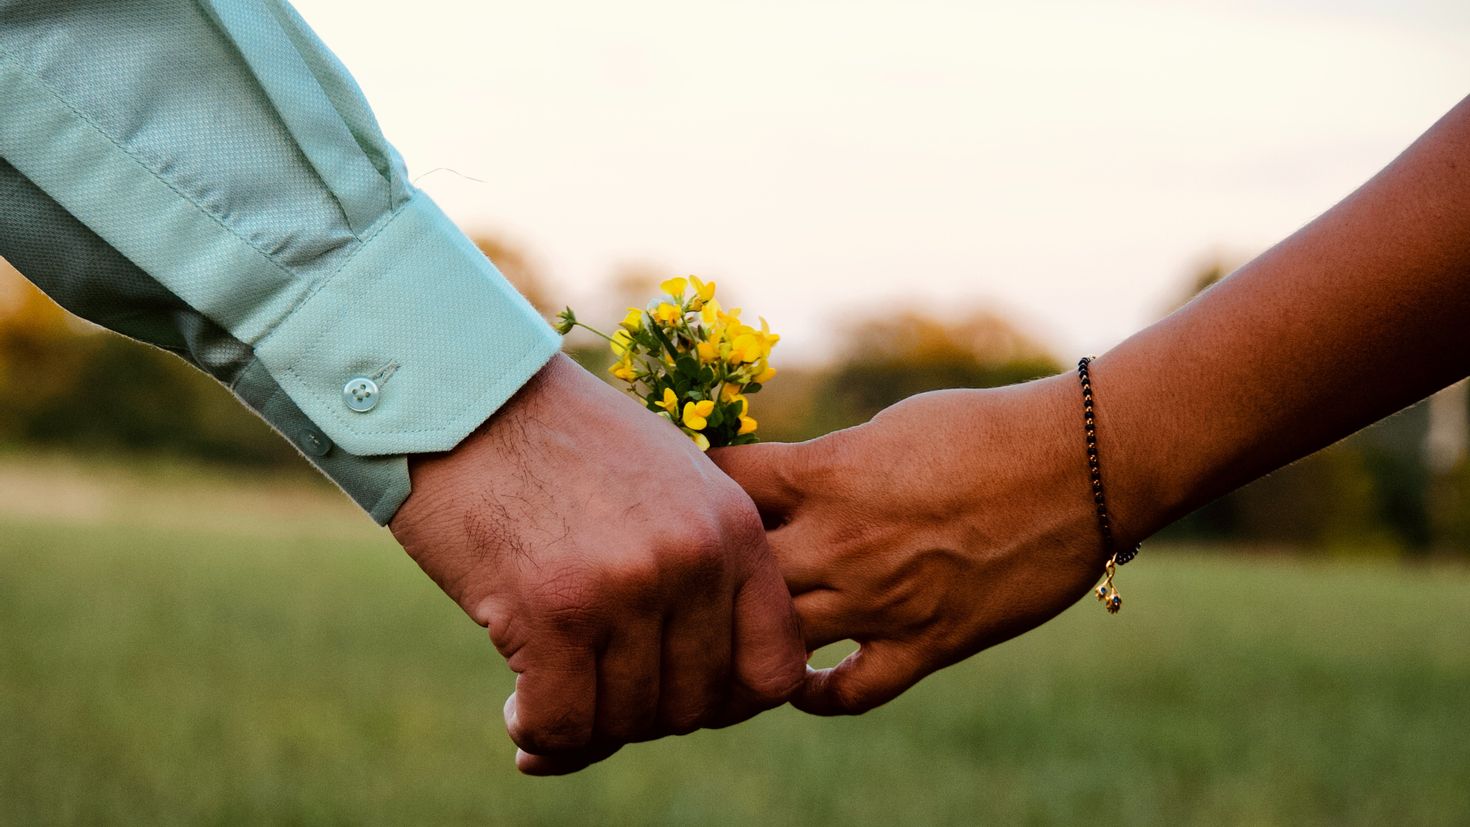 Буда касание. Две руки. Прикосновение рук. Рукопожатие с цветком. Цветы в руках мужчины.